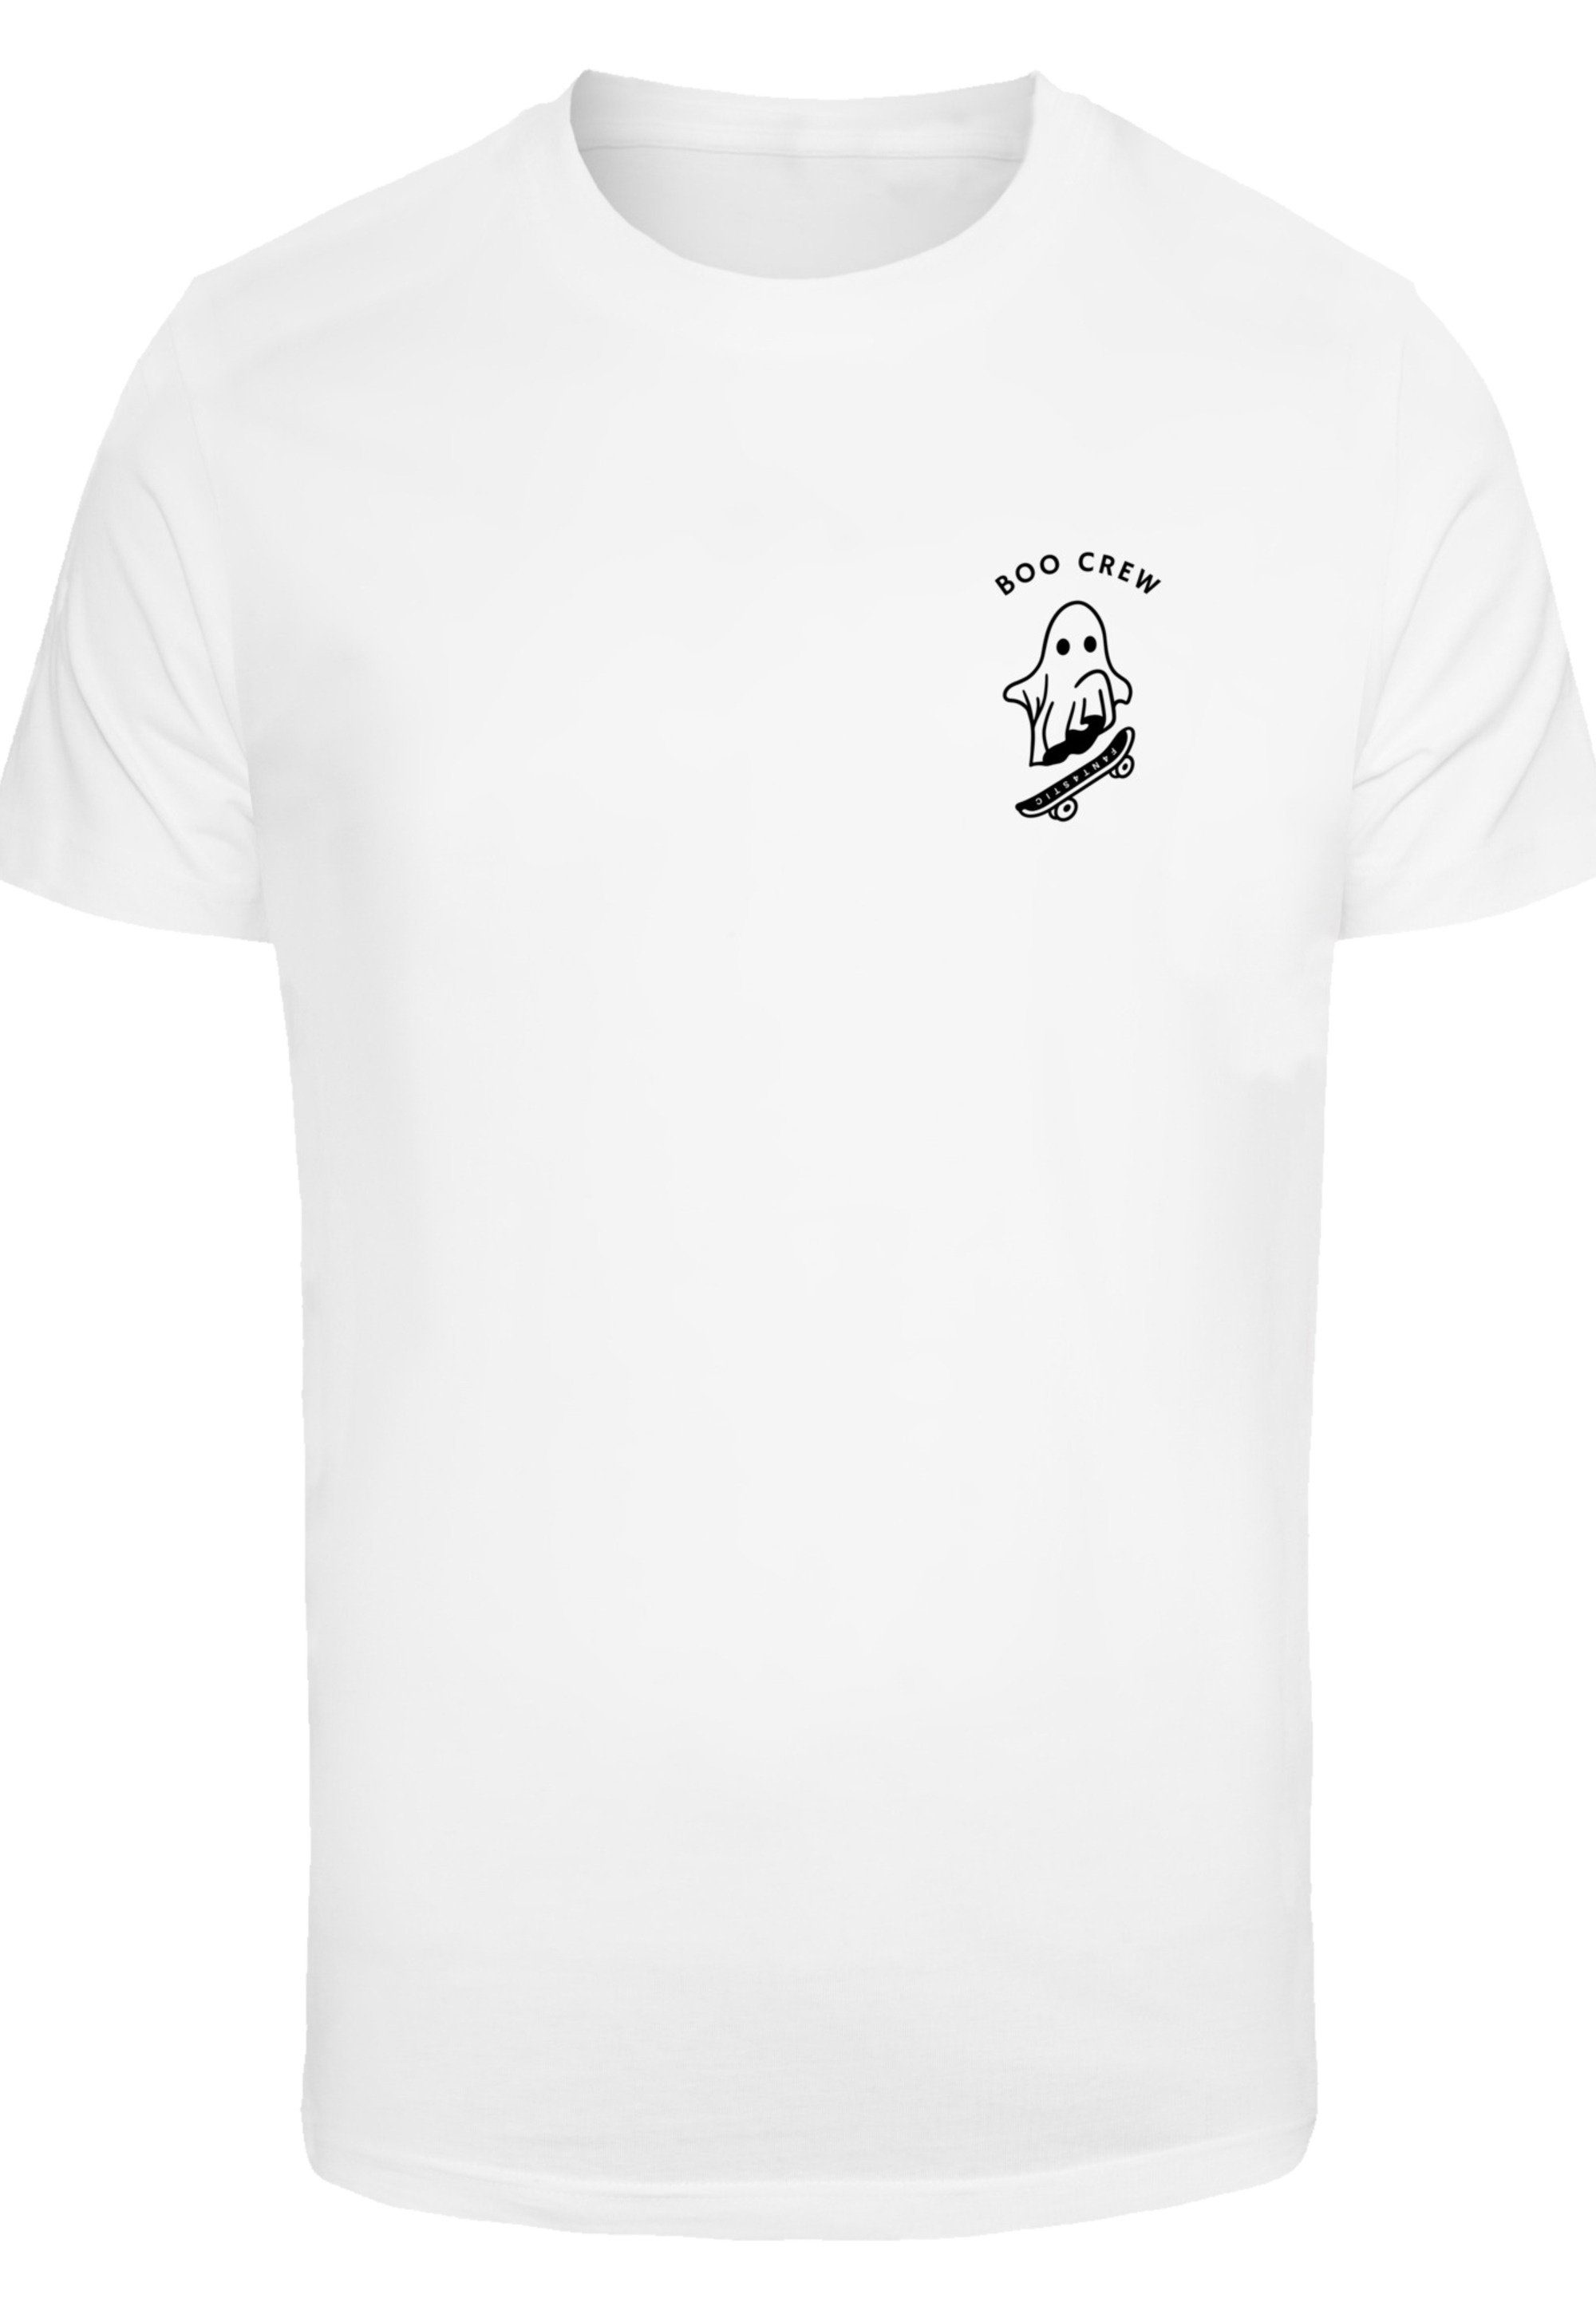 T-Shirt Boo weiß Halloween Crew F4NT4STIC Print